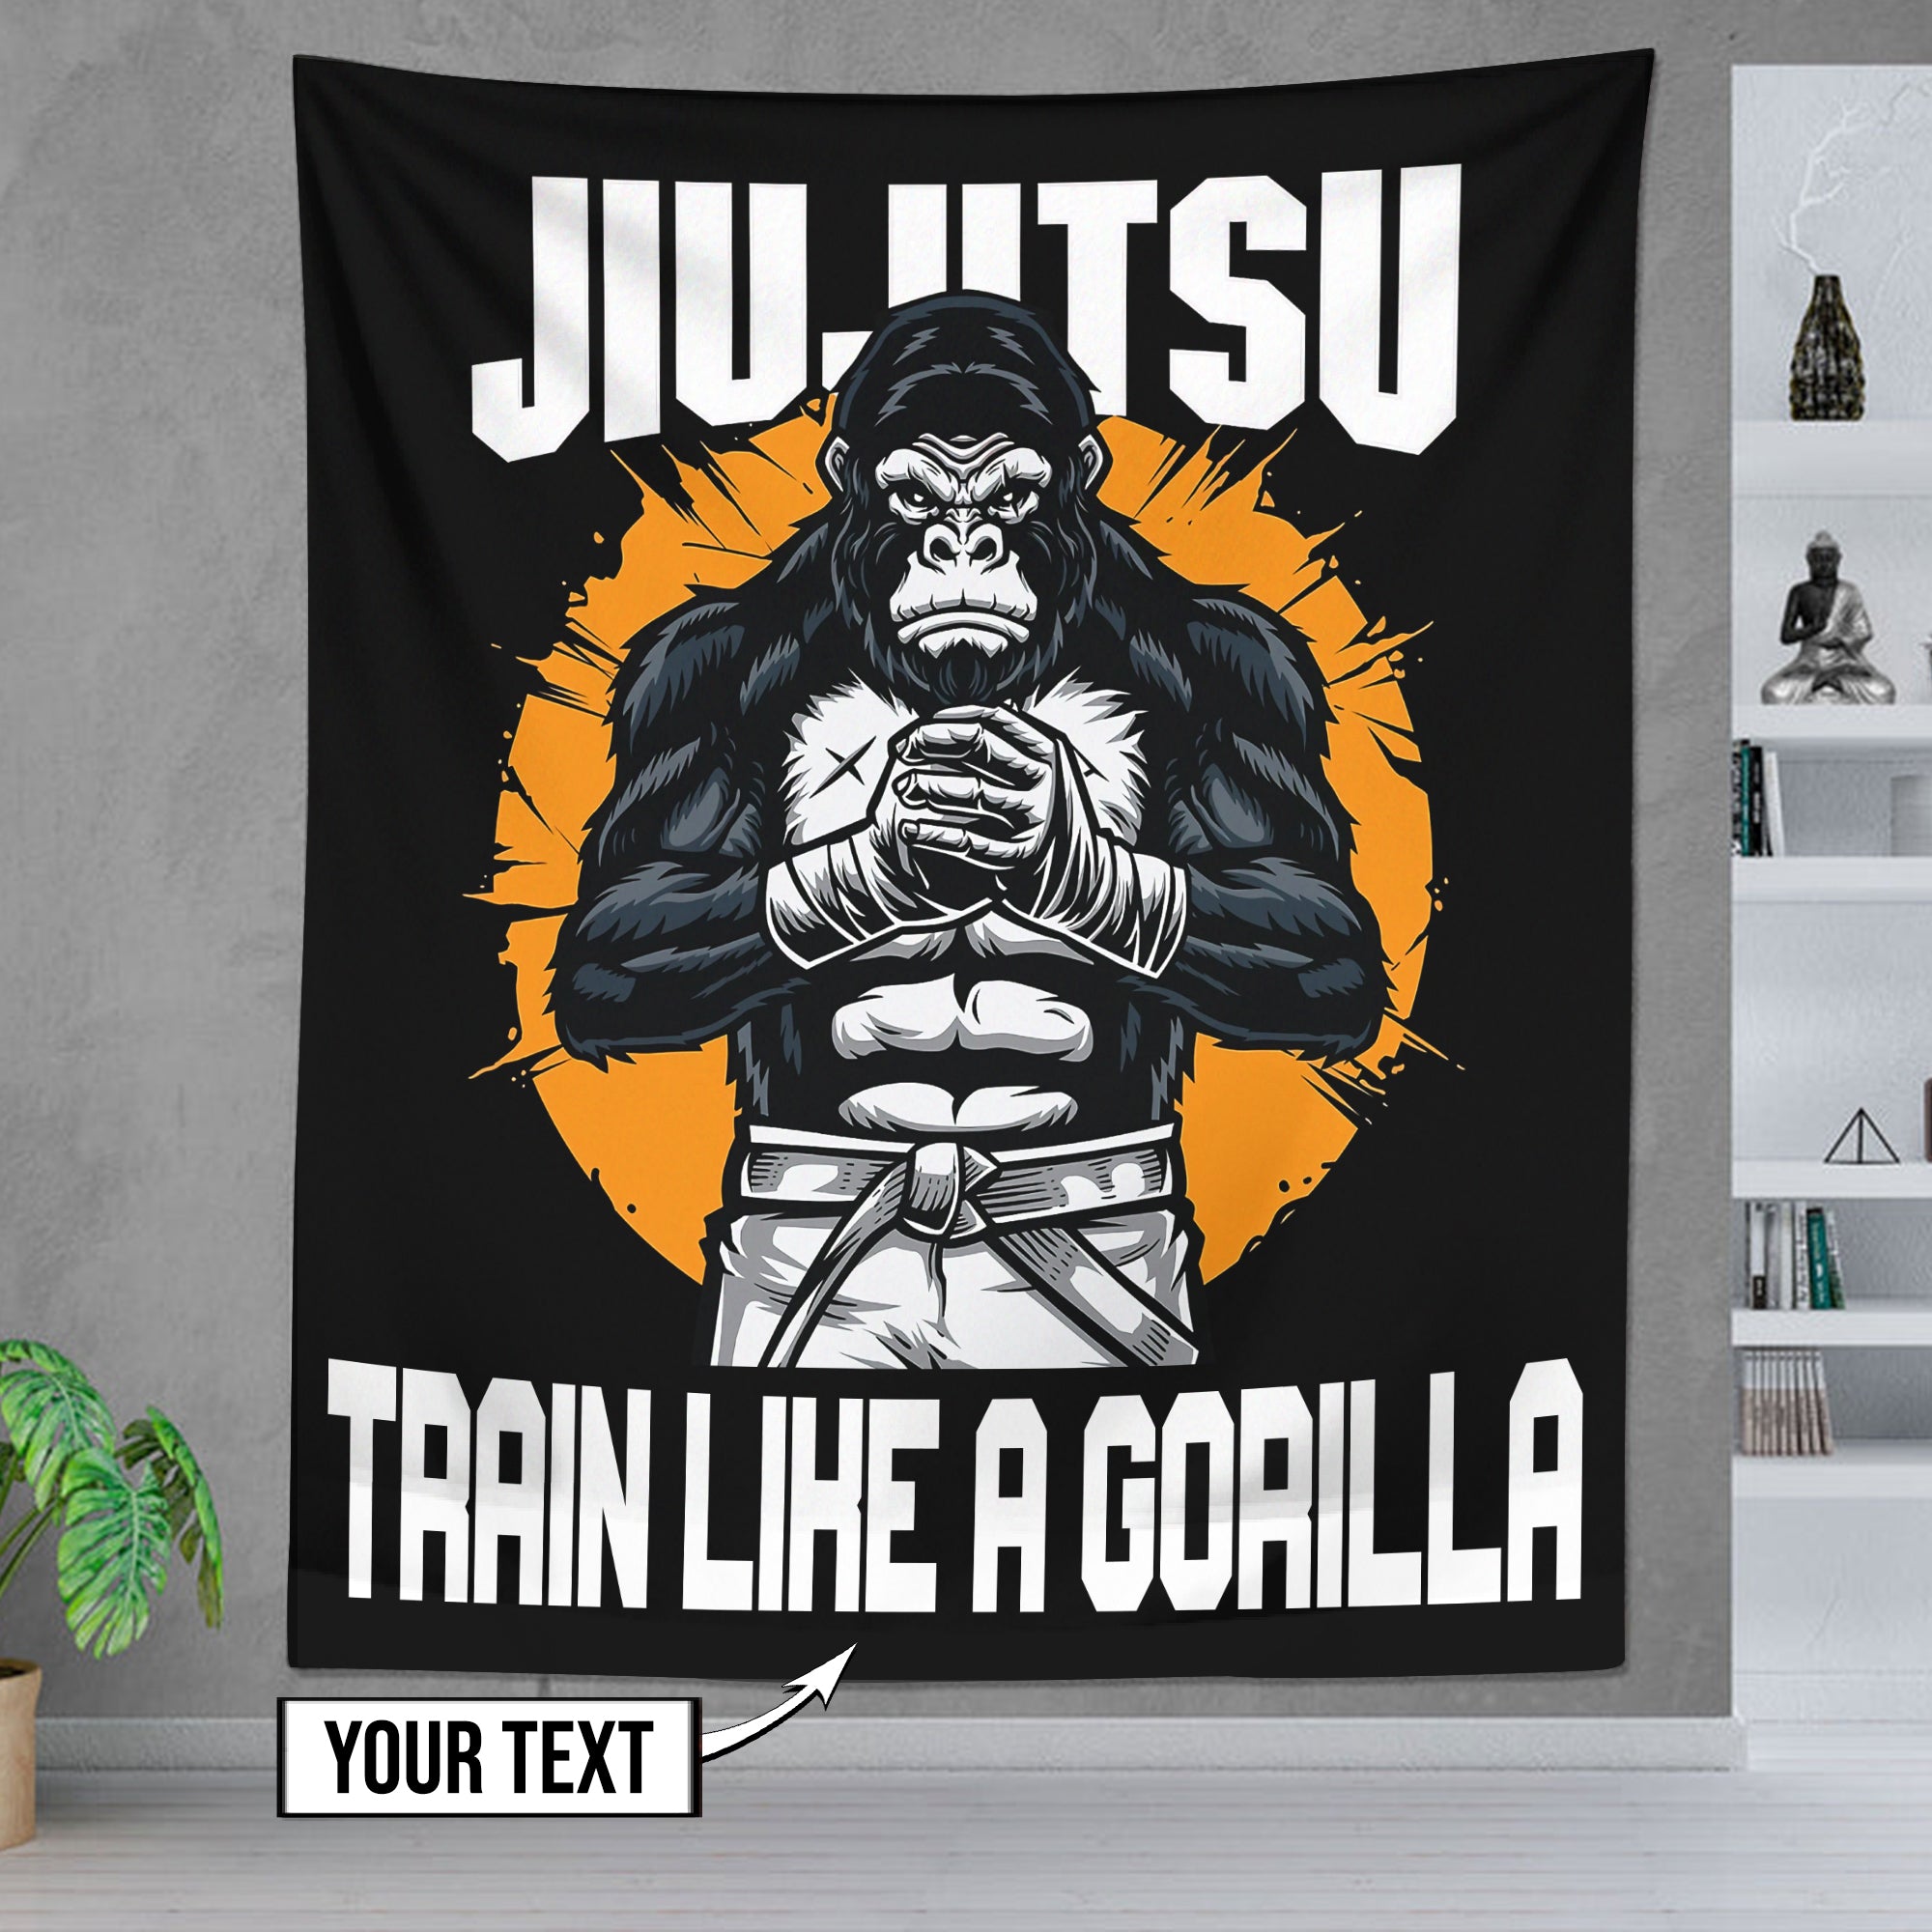 Personalized Gorilla Jiu Jitsu Flags Home Gym Flags